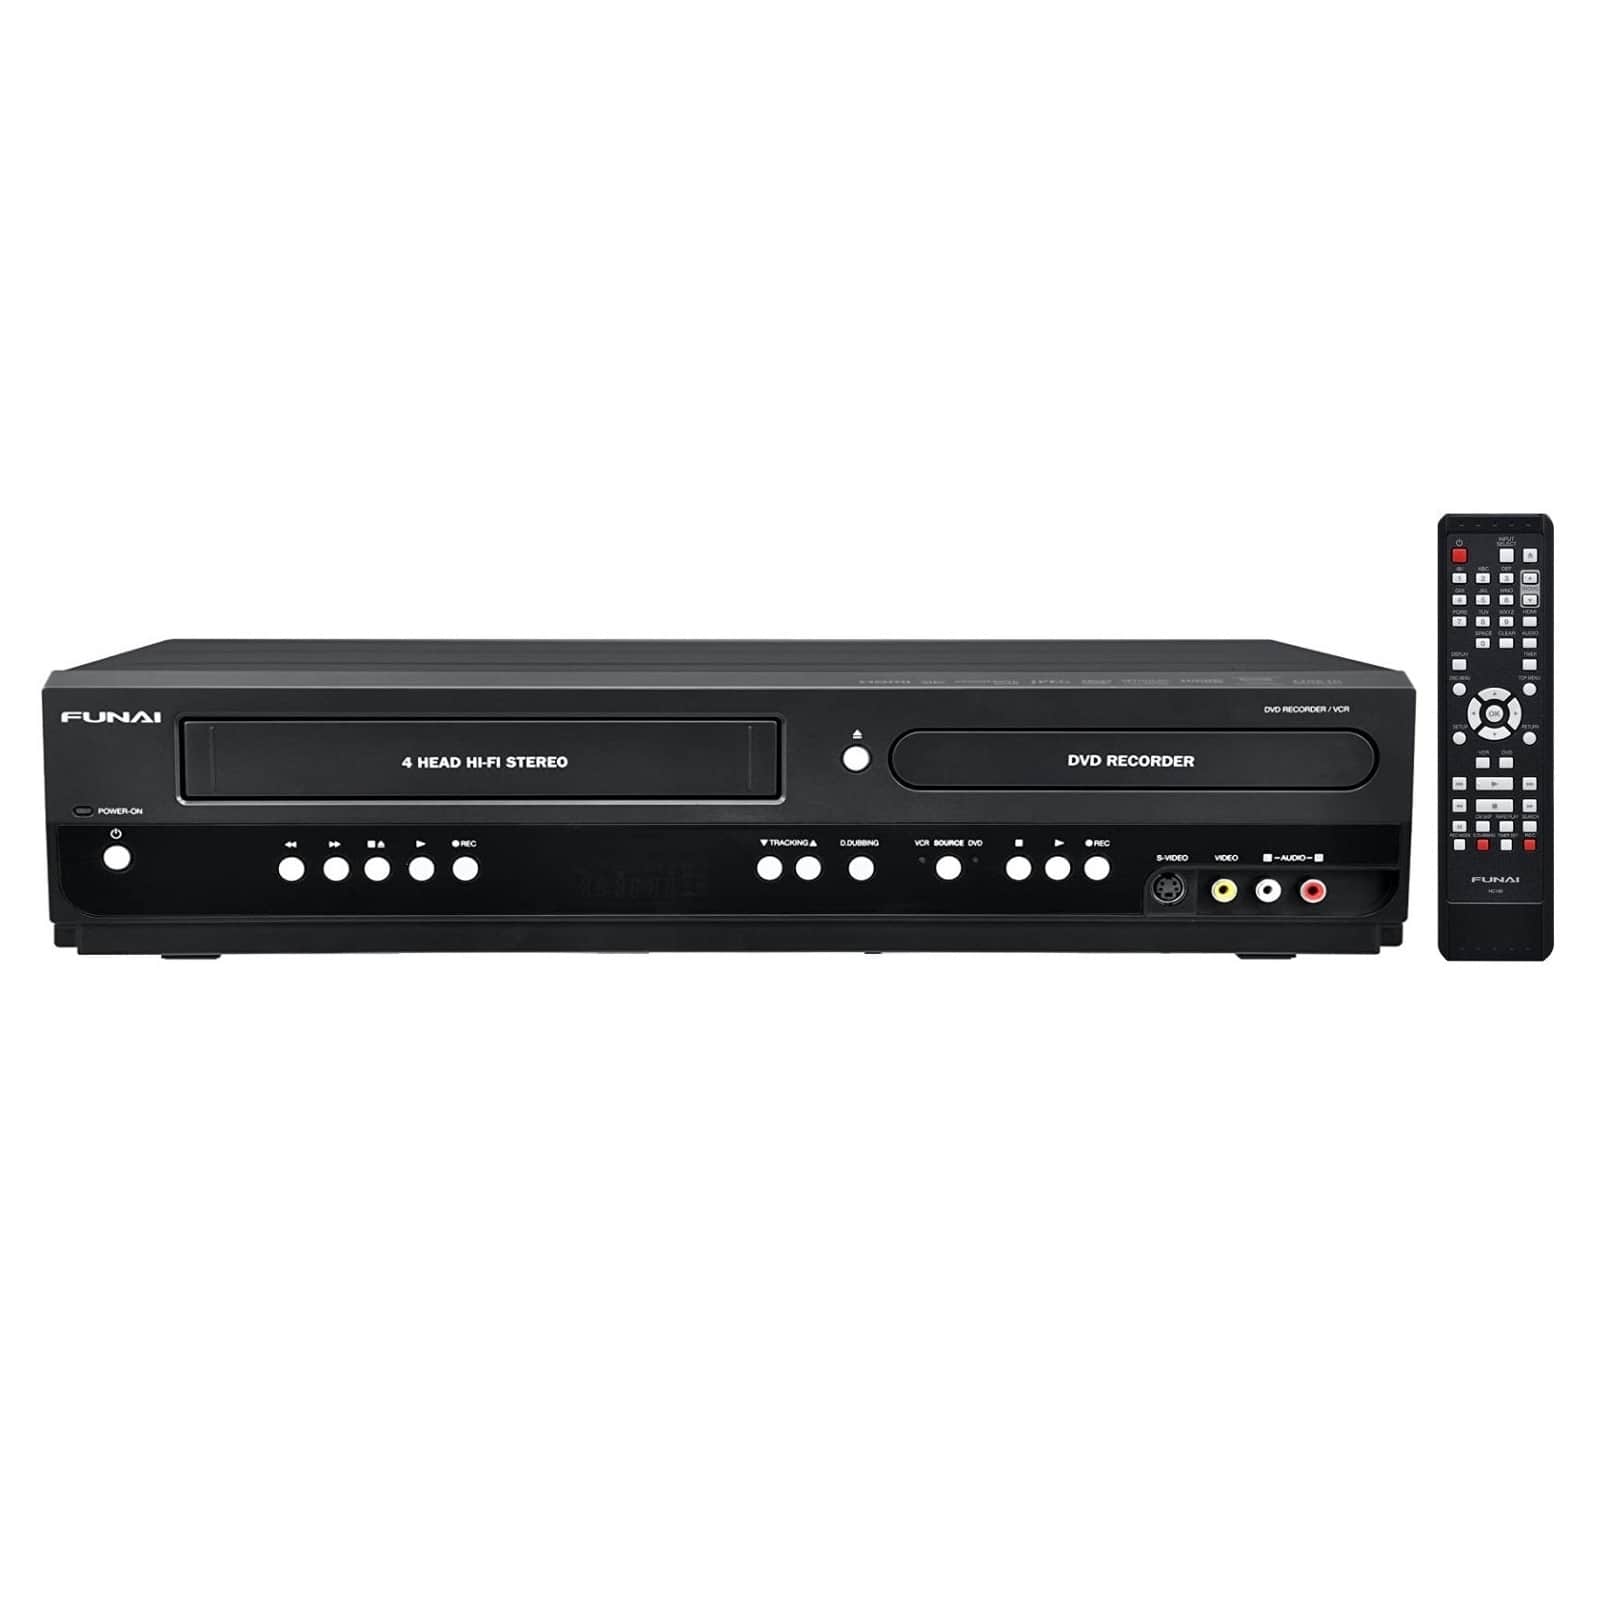 Spanje dynastie vereist Funai ZV427FX4 DVD Recorder VCR VHS Combo For Sale | TekRevolt